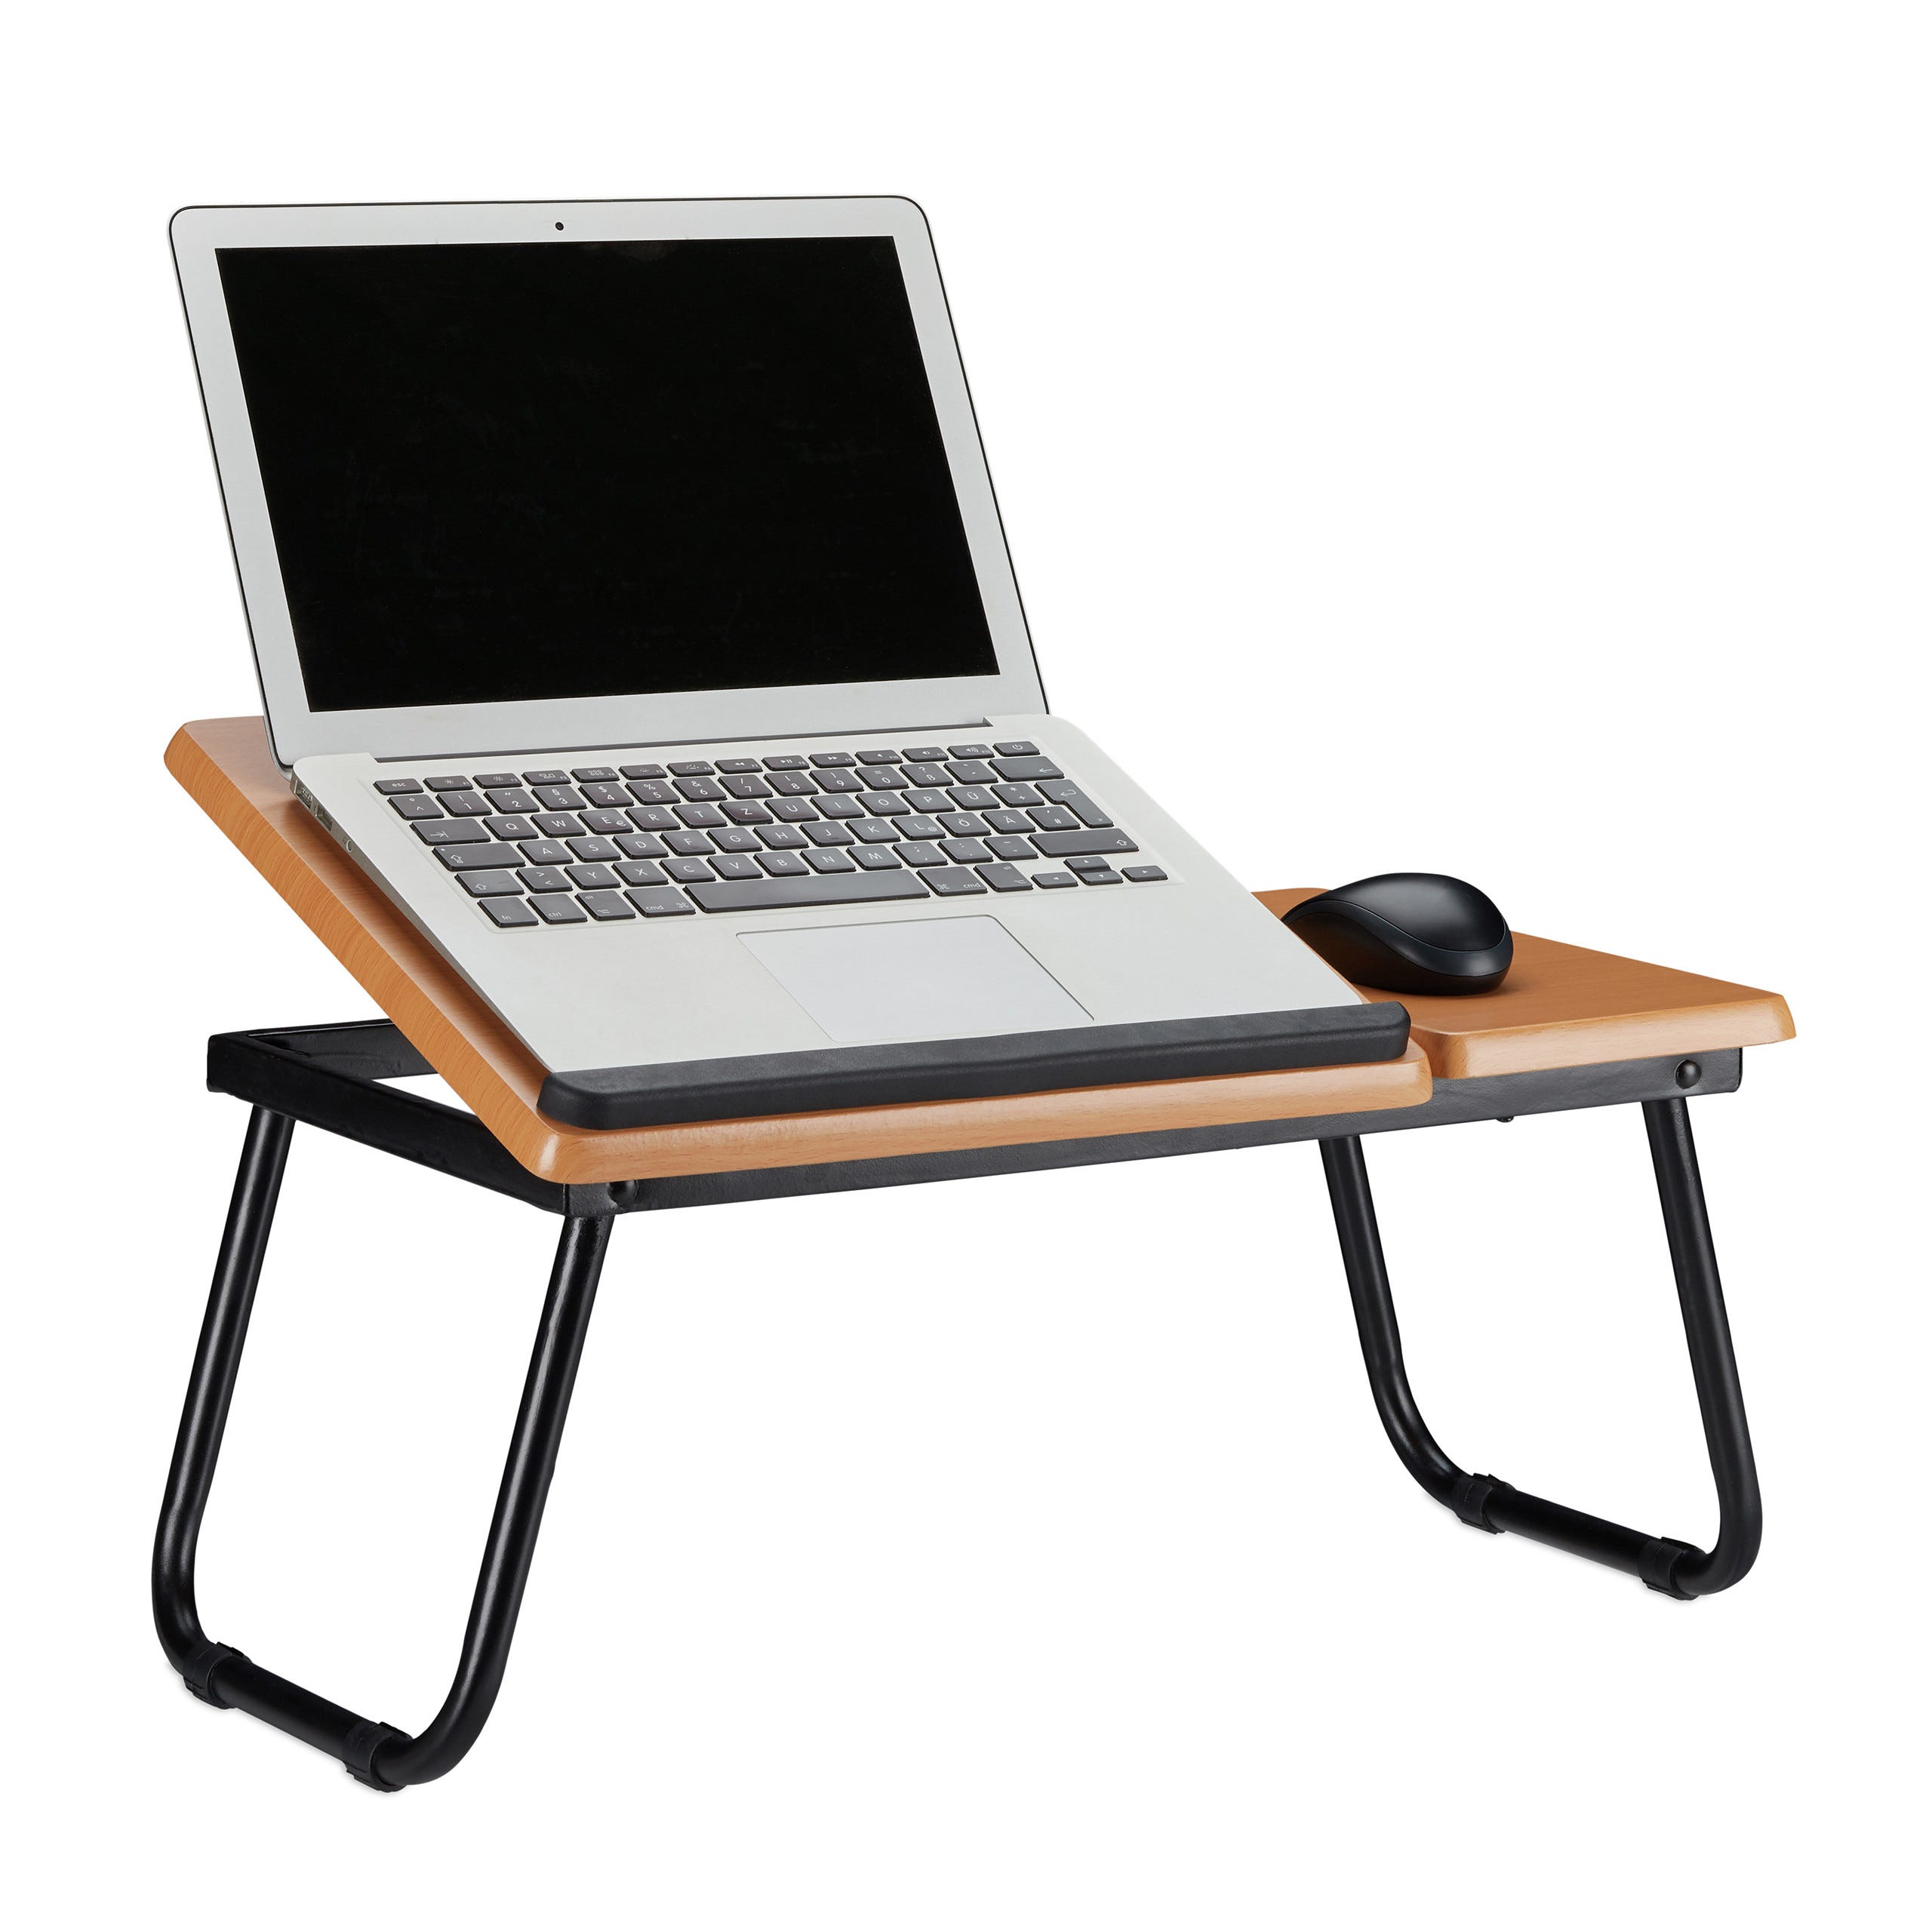 Support d'ordinateur portable portatif pour lit et canapé en bois